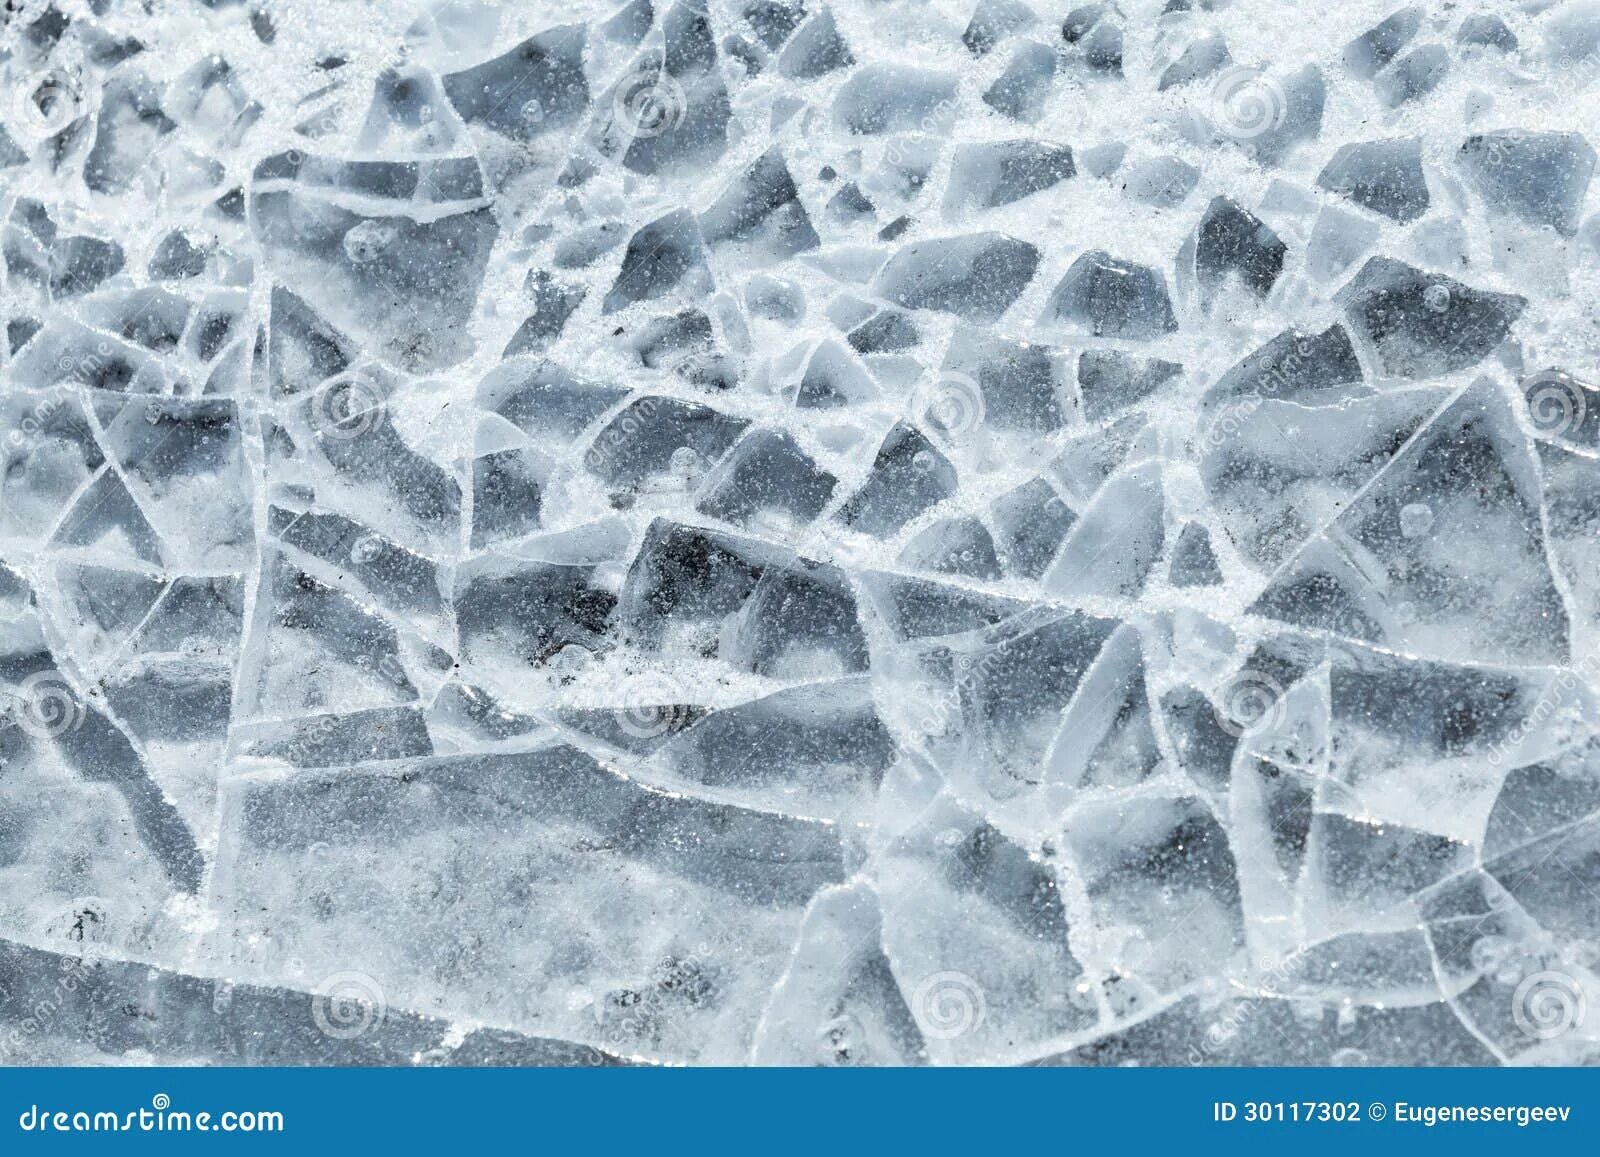 Лед разбивается. Осколки льда. Разбитый лед. Текстура разбитого льда. Трещины на льду.